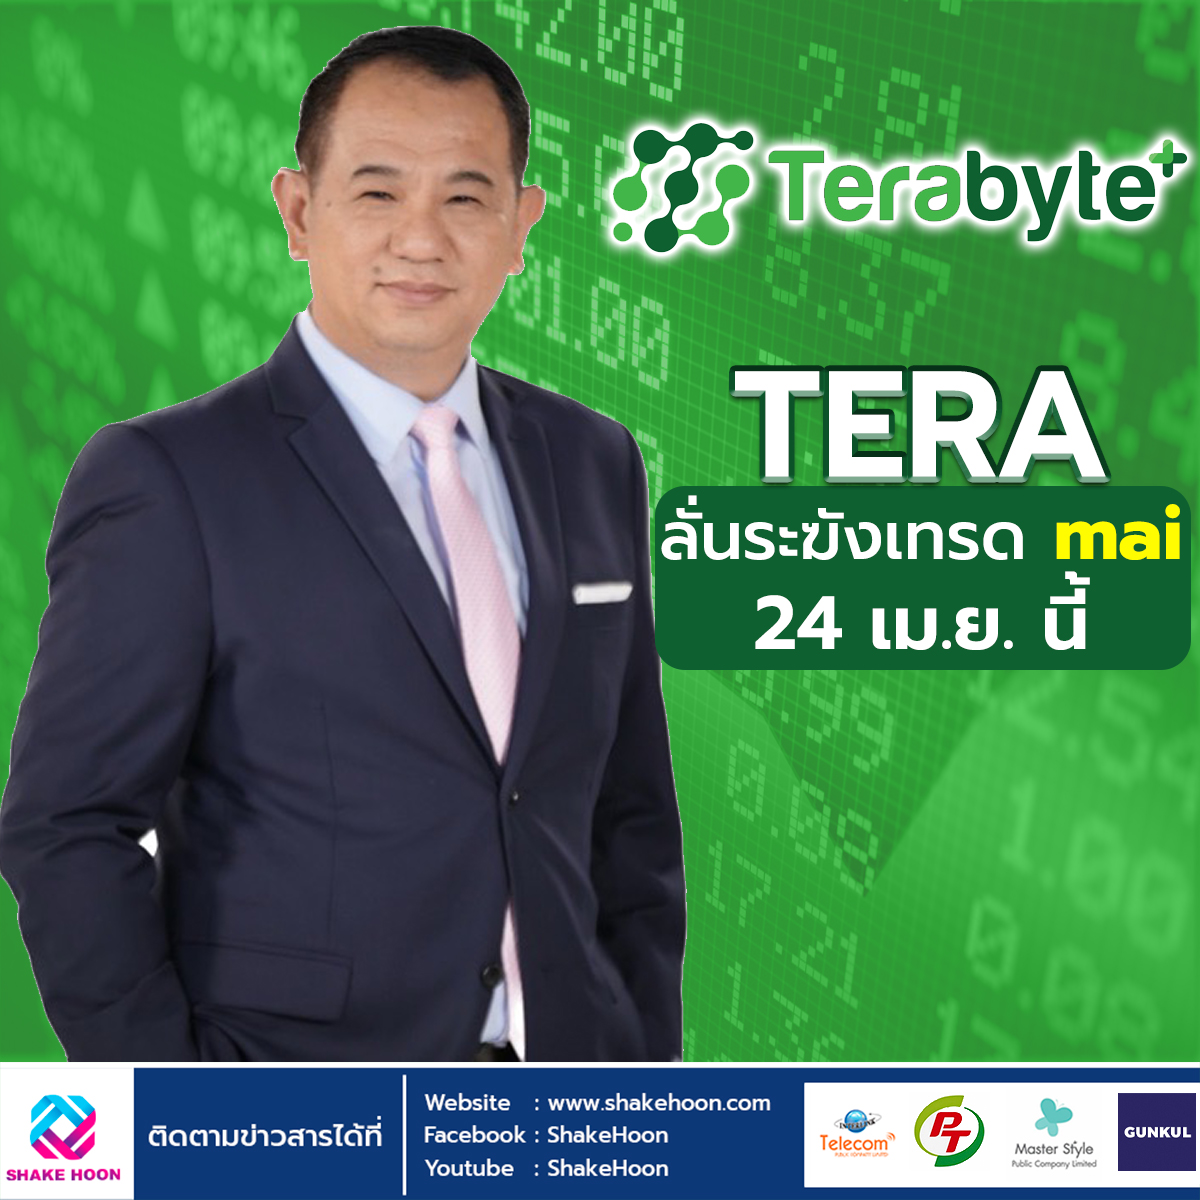 You are currently viewing TERA ลั่นระฆังเทรด mai 24 เม.ย. นี้